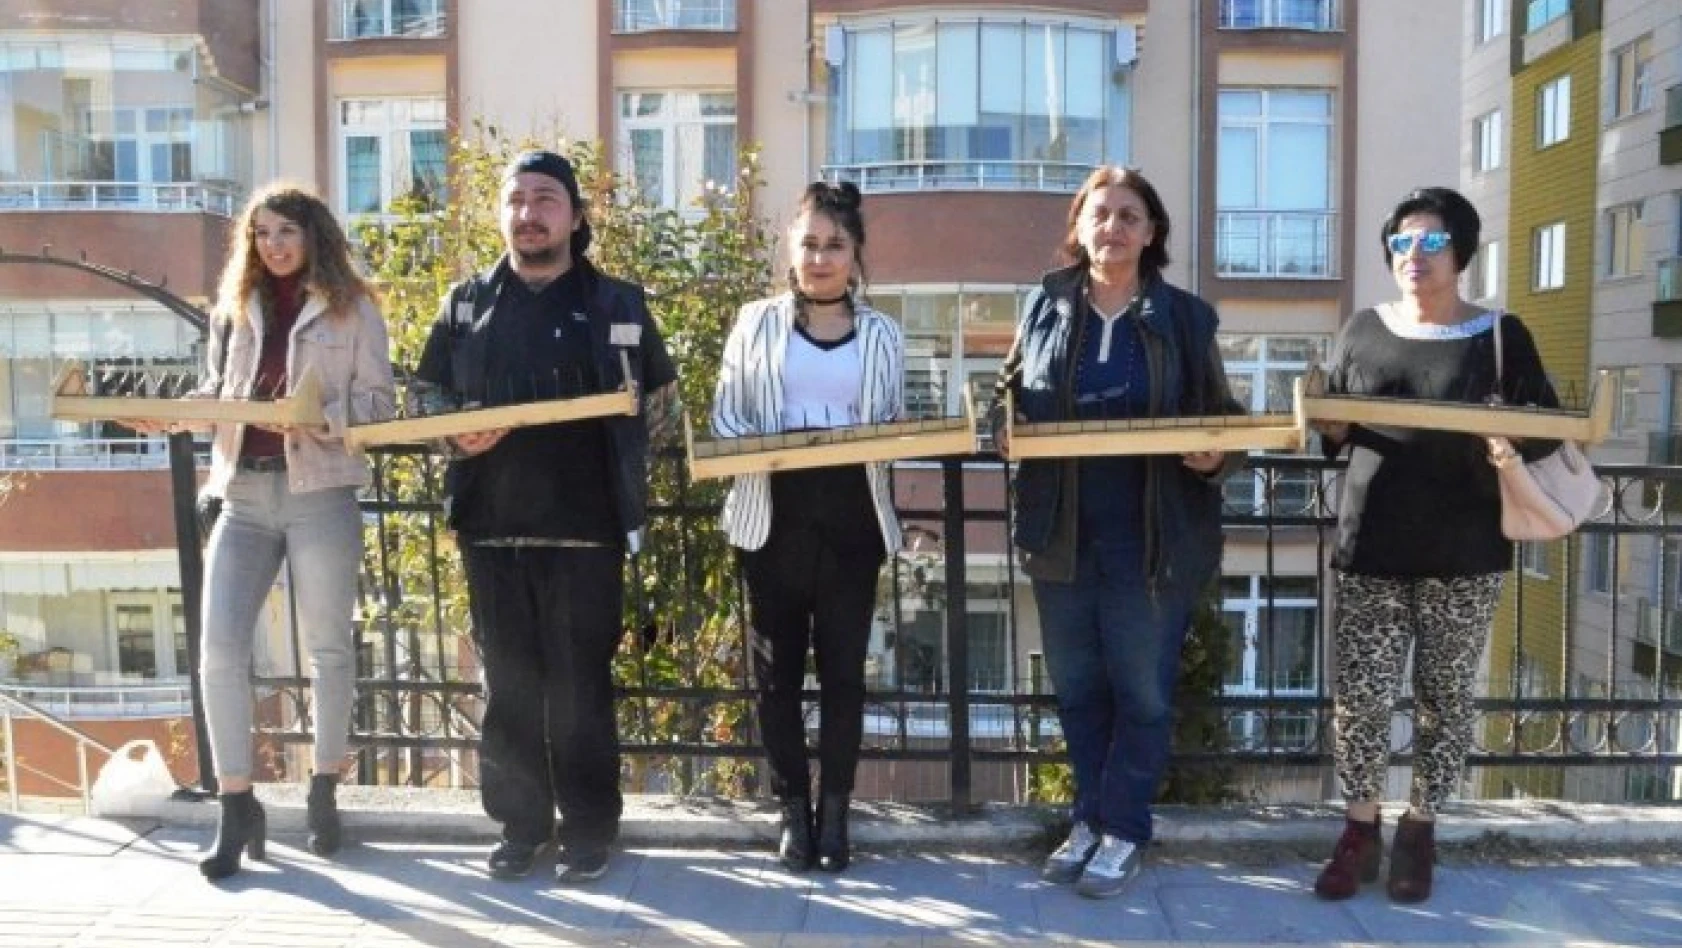 Kastamonu Belediyesi güvercinlere besleme çalışması gerçekleştirdi